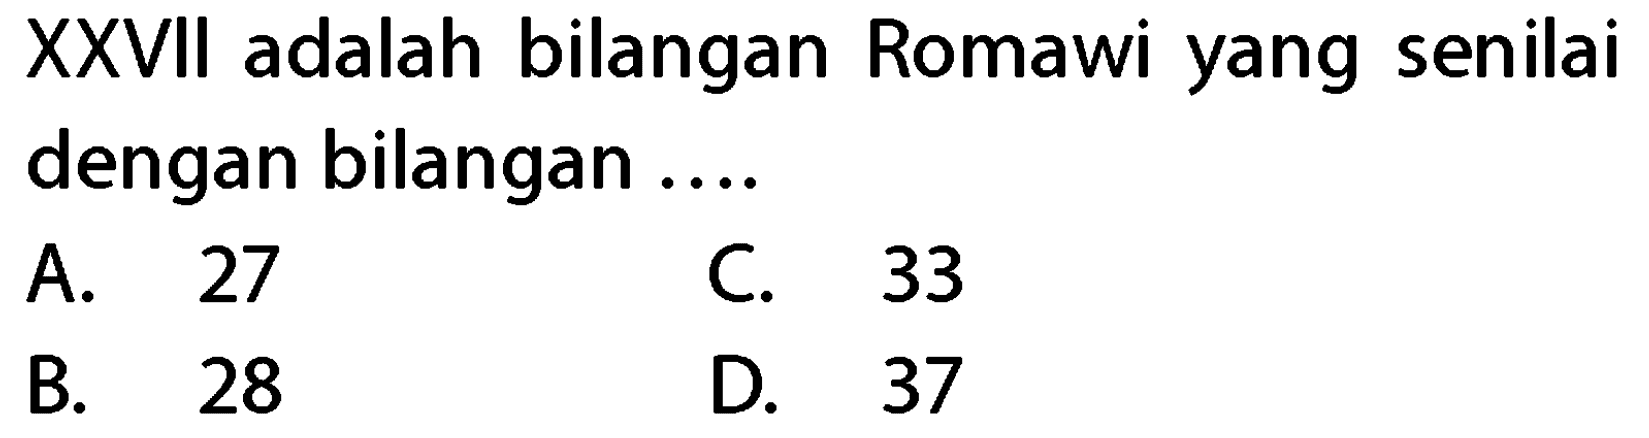 XXVII adalah bilangan Romawi yang senilai dengan bilangan ....
A. 27
C. 33
B. 28
D. 37